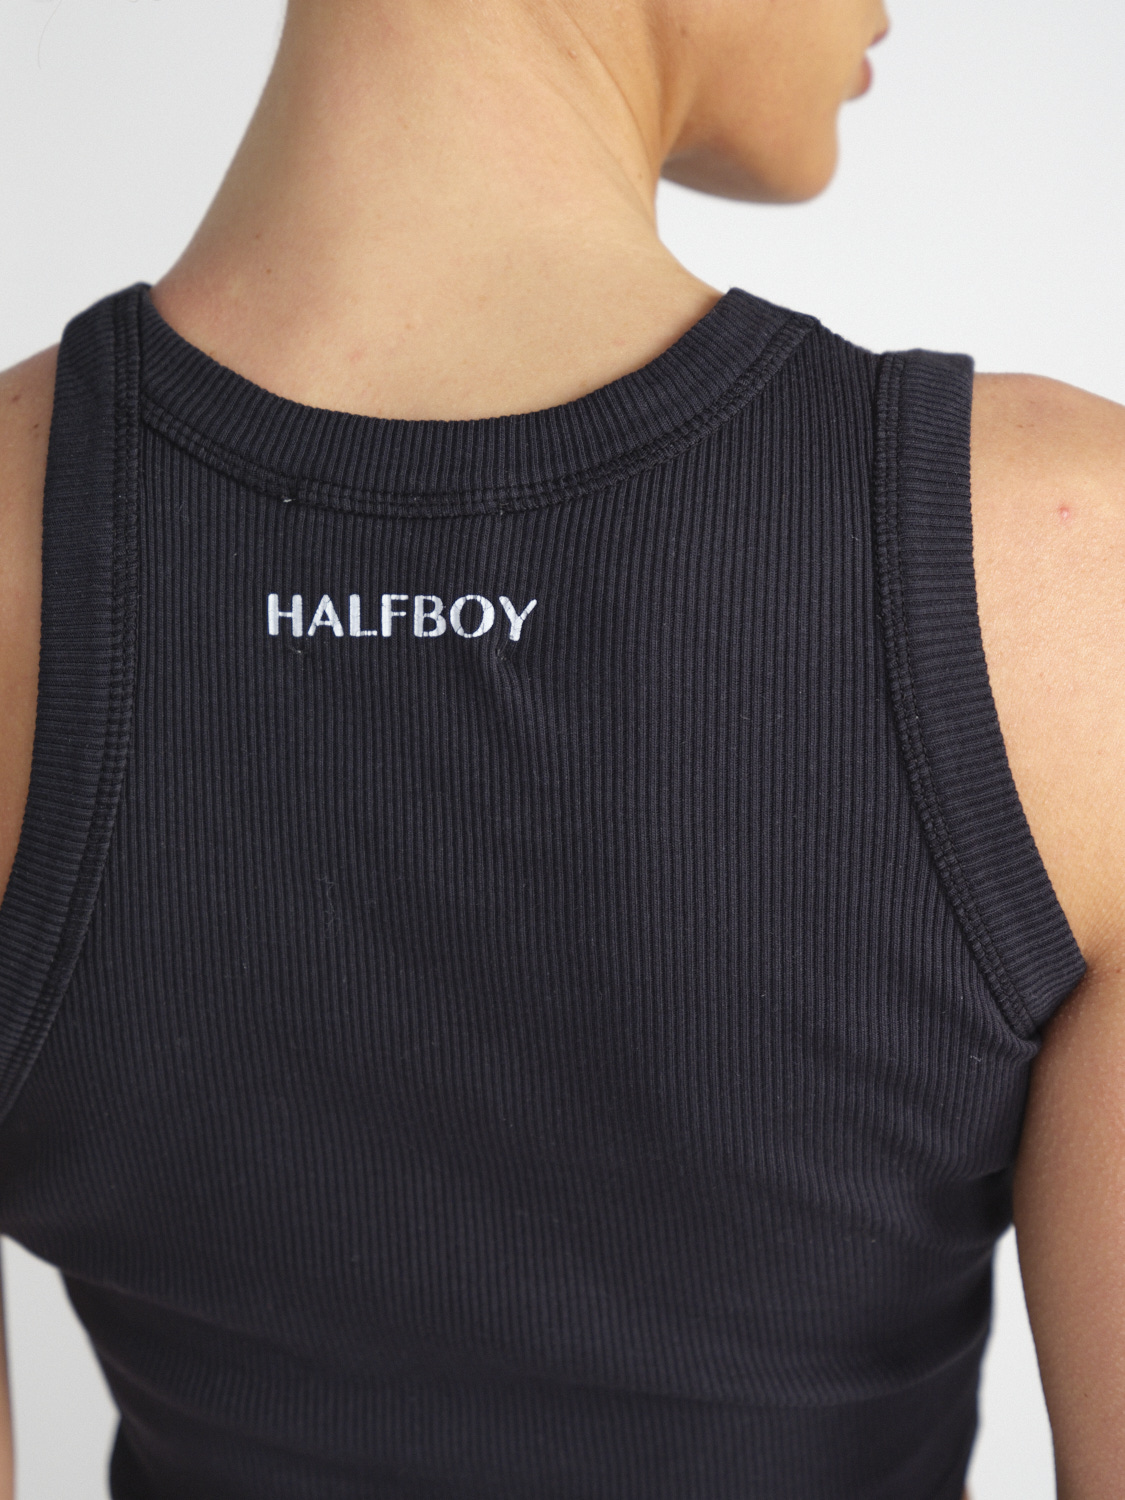 Halfboy Crop – Cropped Baumwoll-Tank-Top mit Logo-Detail   schwarz S